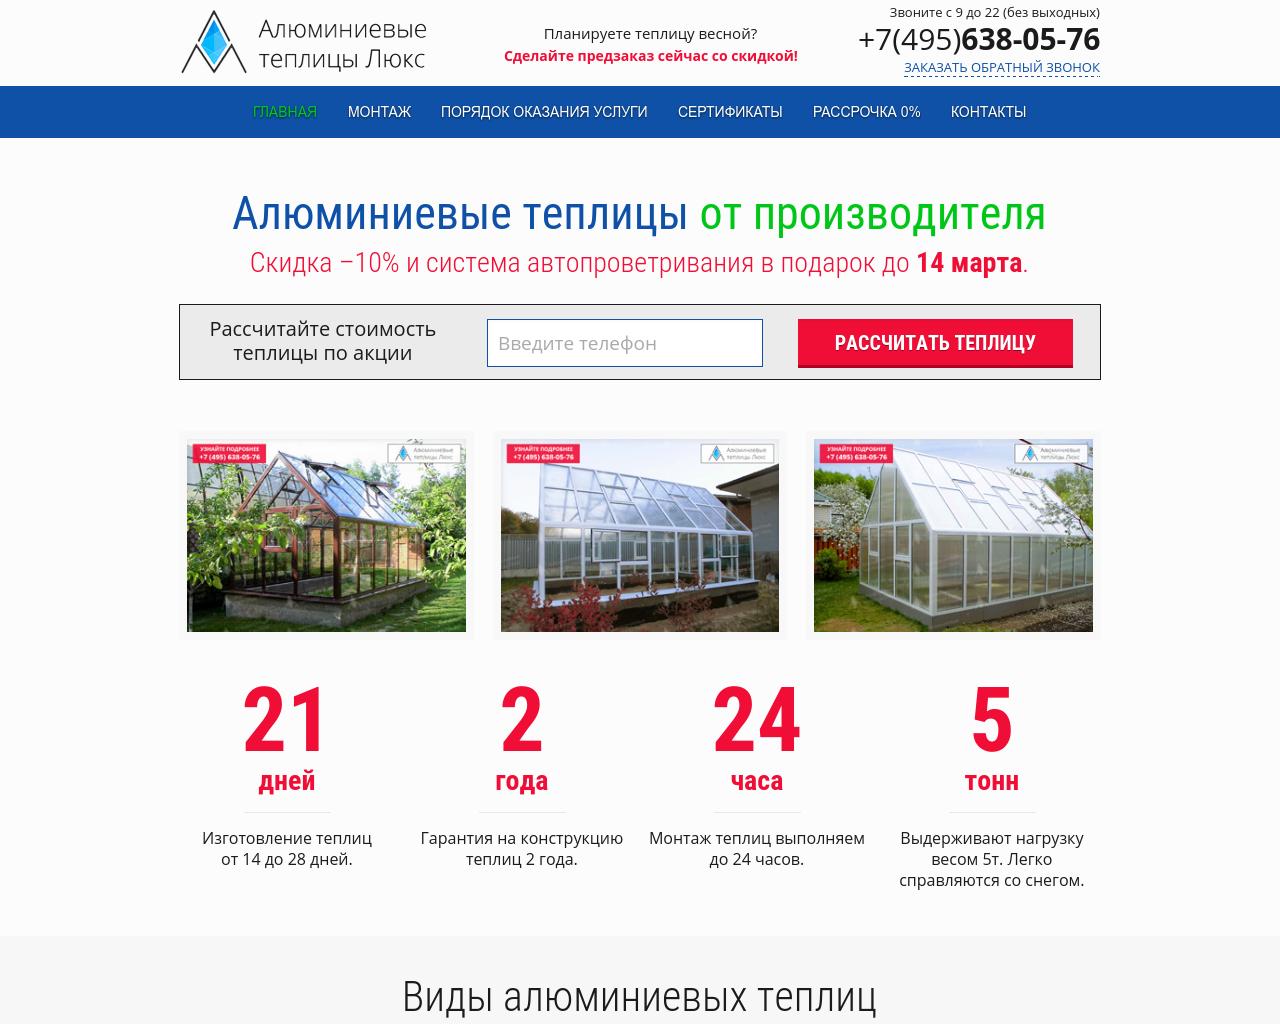 Изображение сайта achudin.ru в разрешении 1280x1024